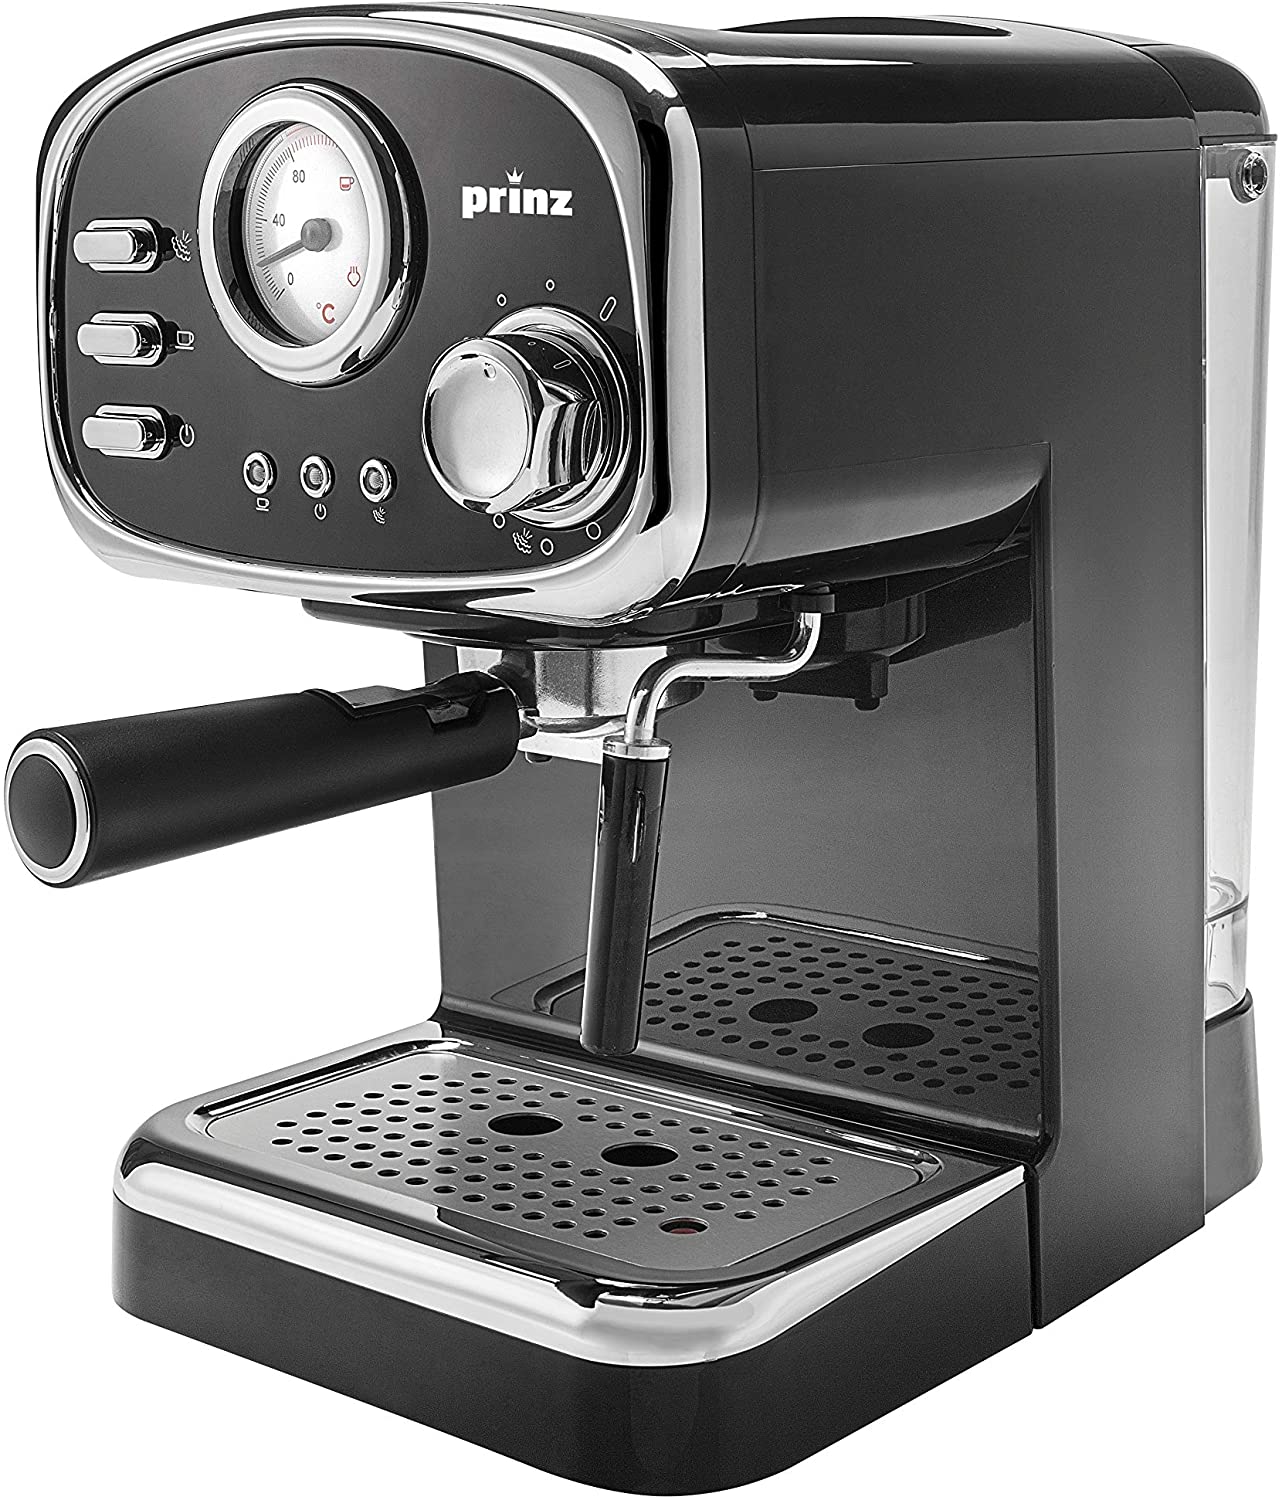 Prinz Espresso Machine in Retro Design - Milk Frother Nozzle - 1.25 Litre Removable Water Tank